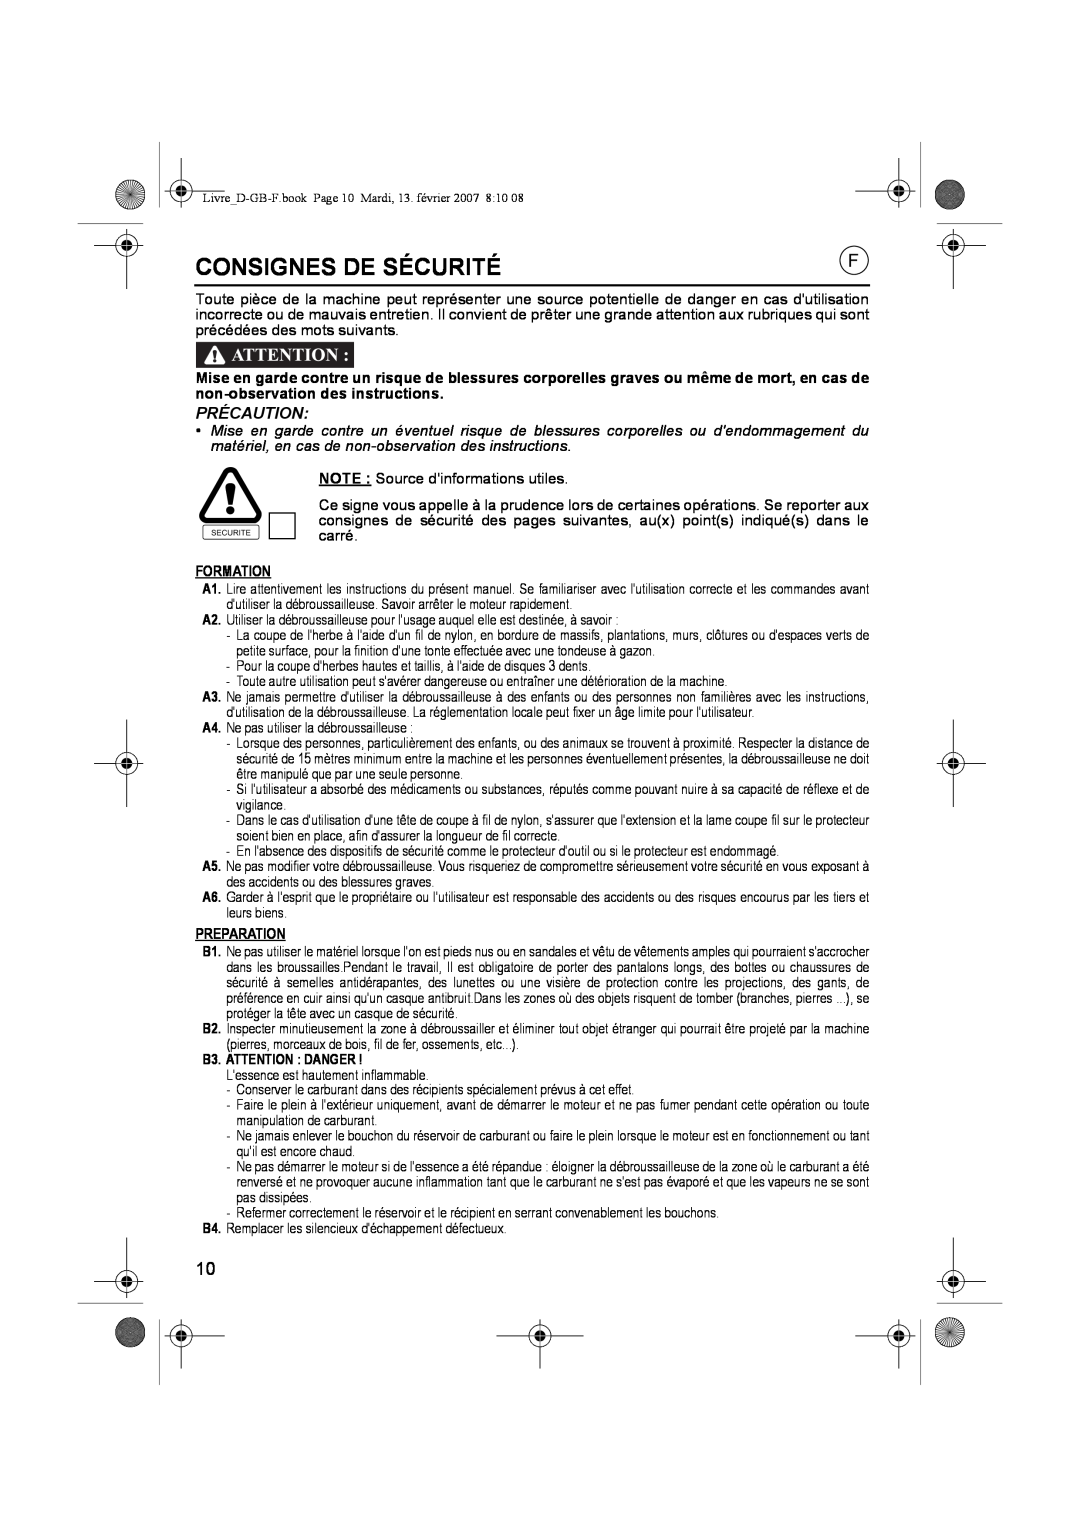 Honda Power Equipment UMK435E owner manual Consignes De Sécurité, Précaution, Formation, Preparation, B3. ATTENTION DANGER 